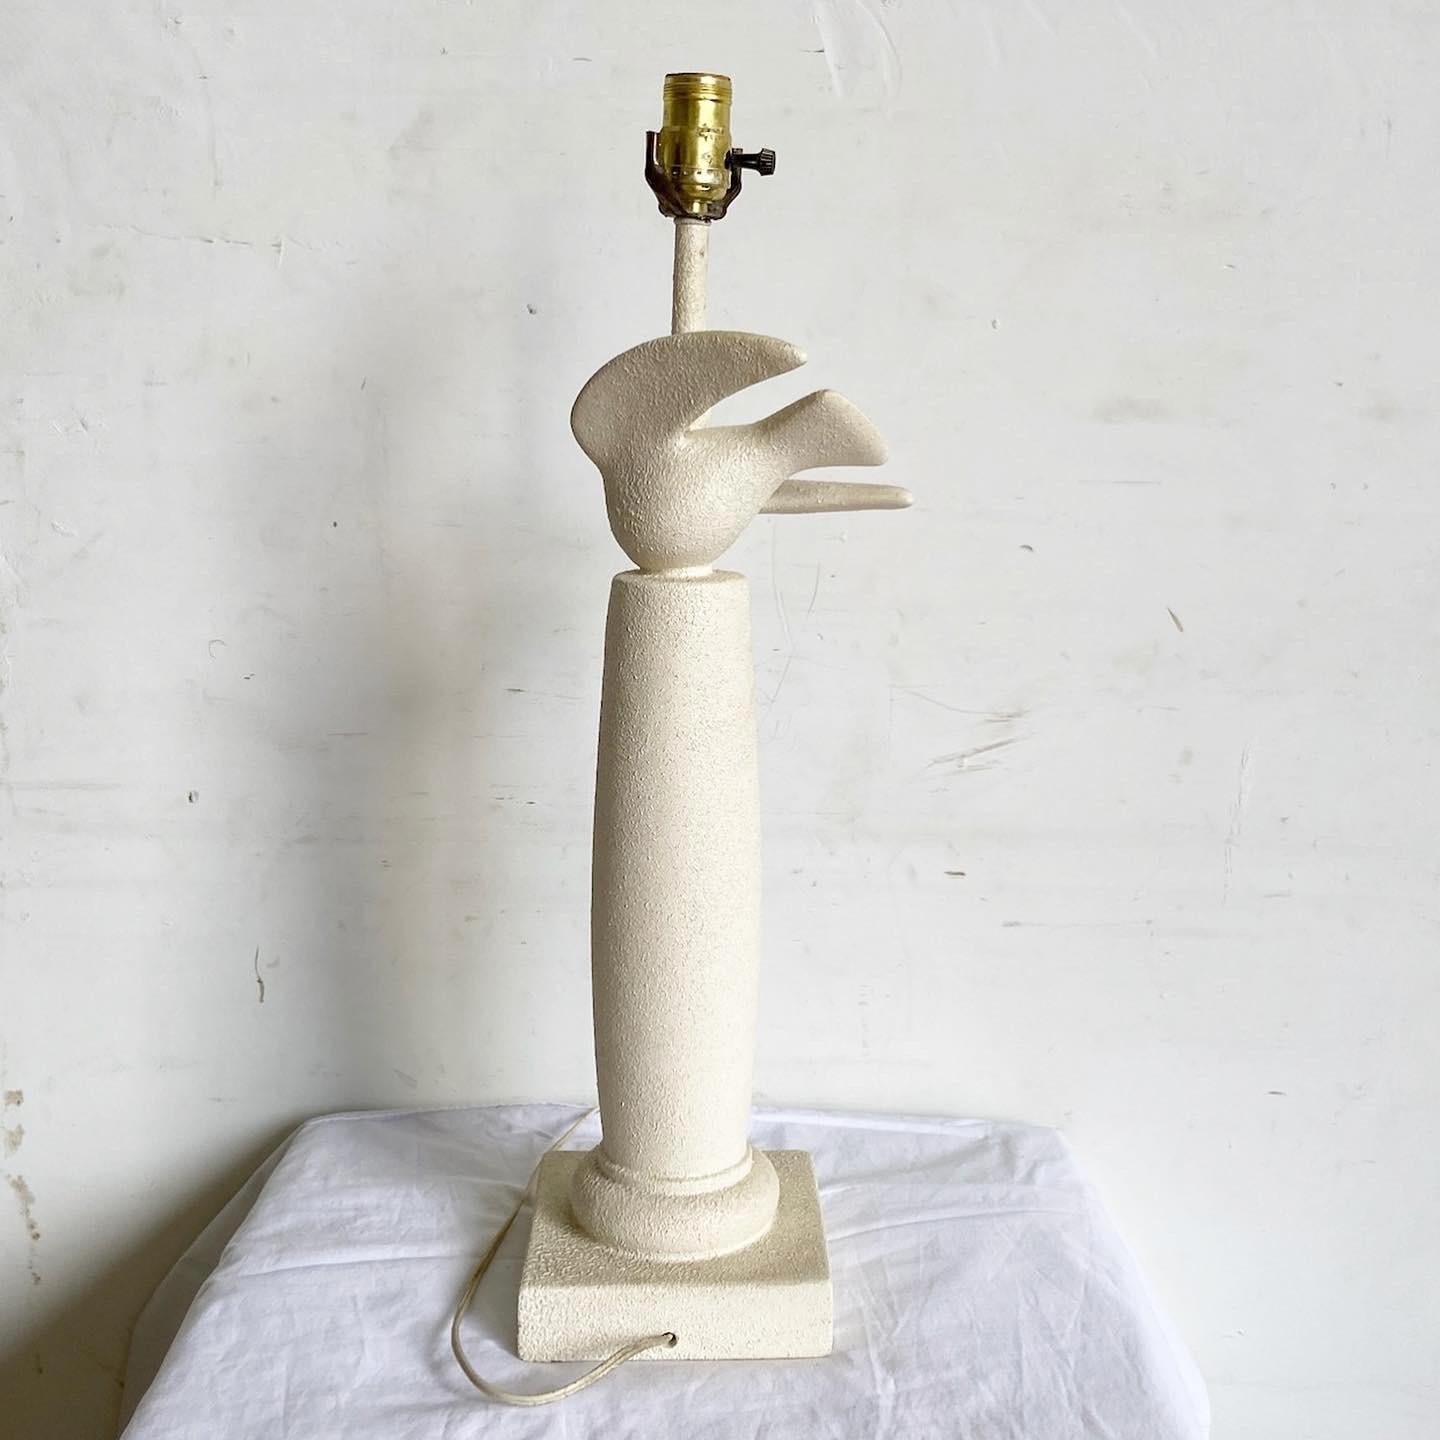 Illuminez votre espace avec l'élégance de la lampe postmoderne sculptée Dove. Son corps en plâtre texturé est orné d'une colombe gracieusement sculptée, symbole de la paix, qui prend son envol. La forme minimaliste associée aux détails complexes de